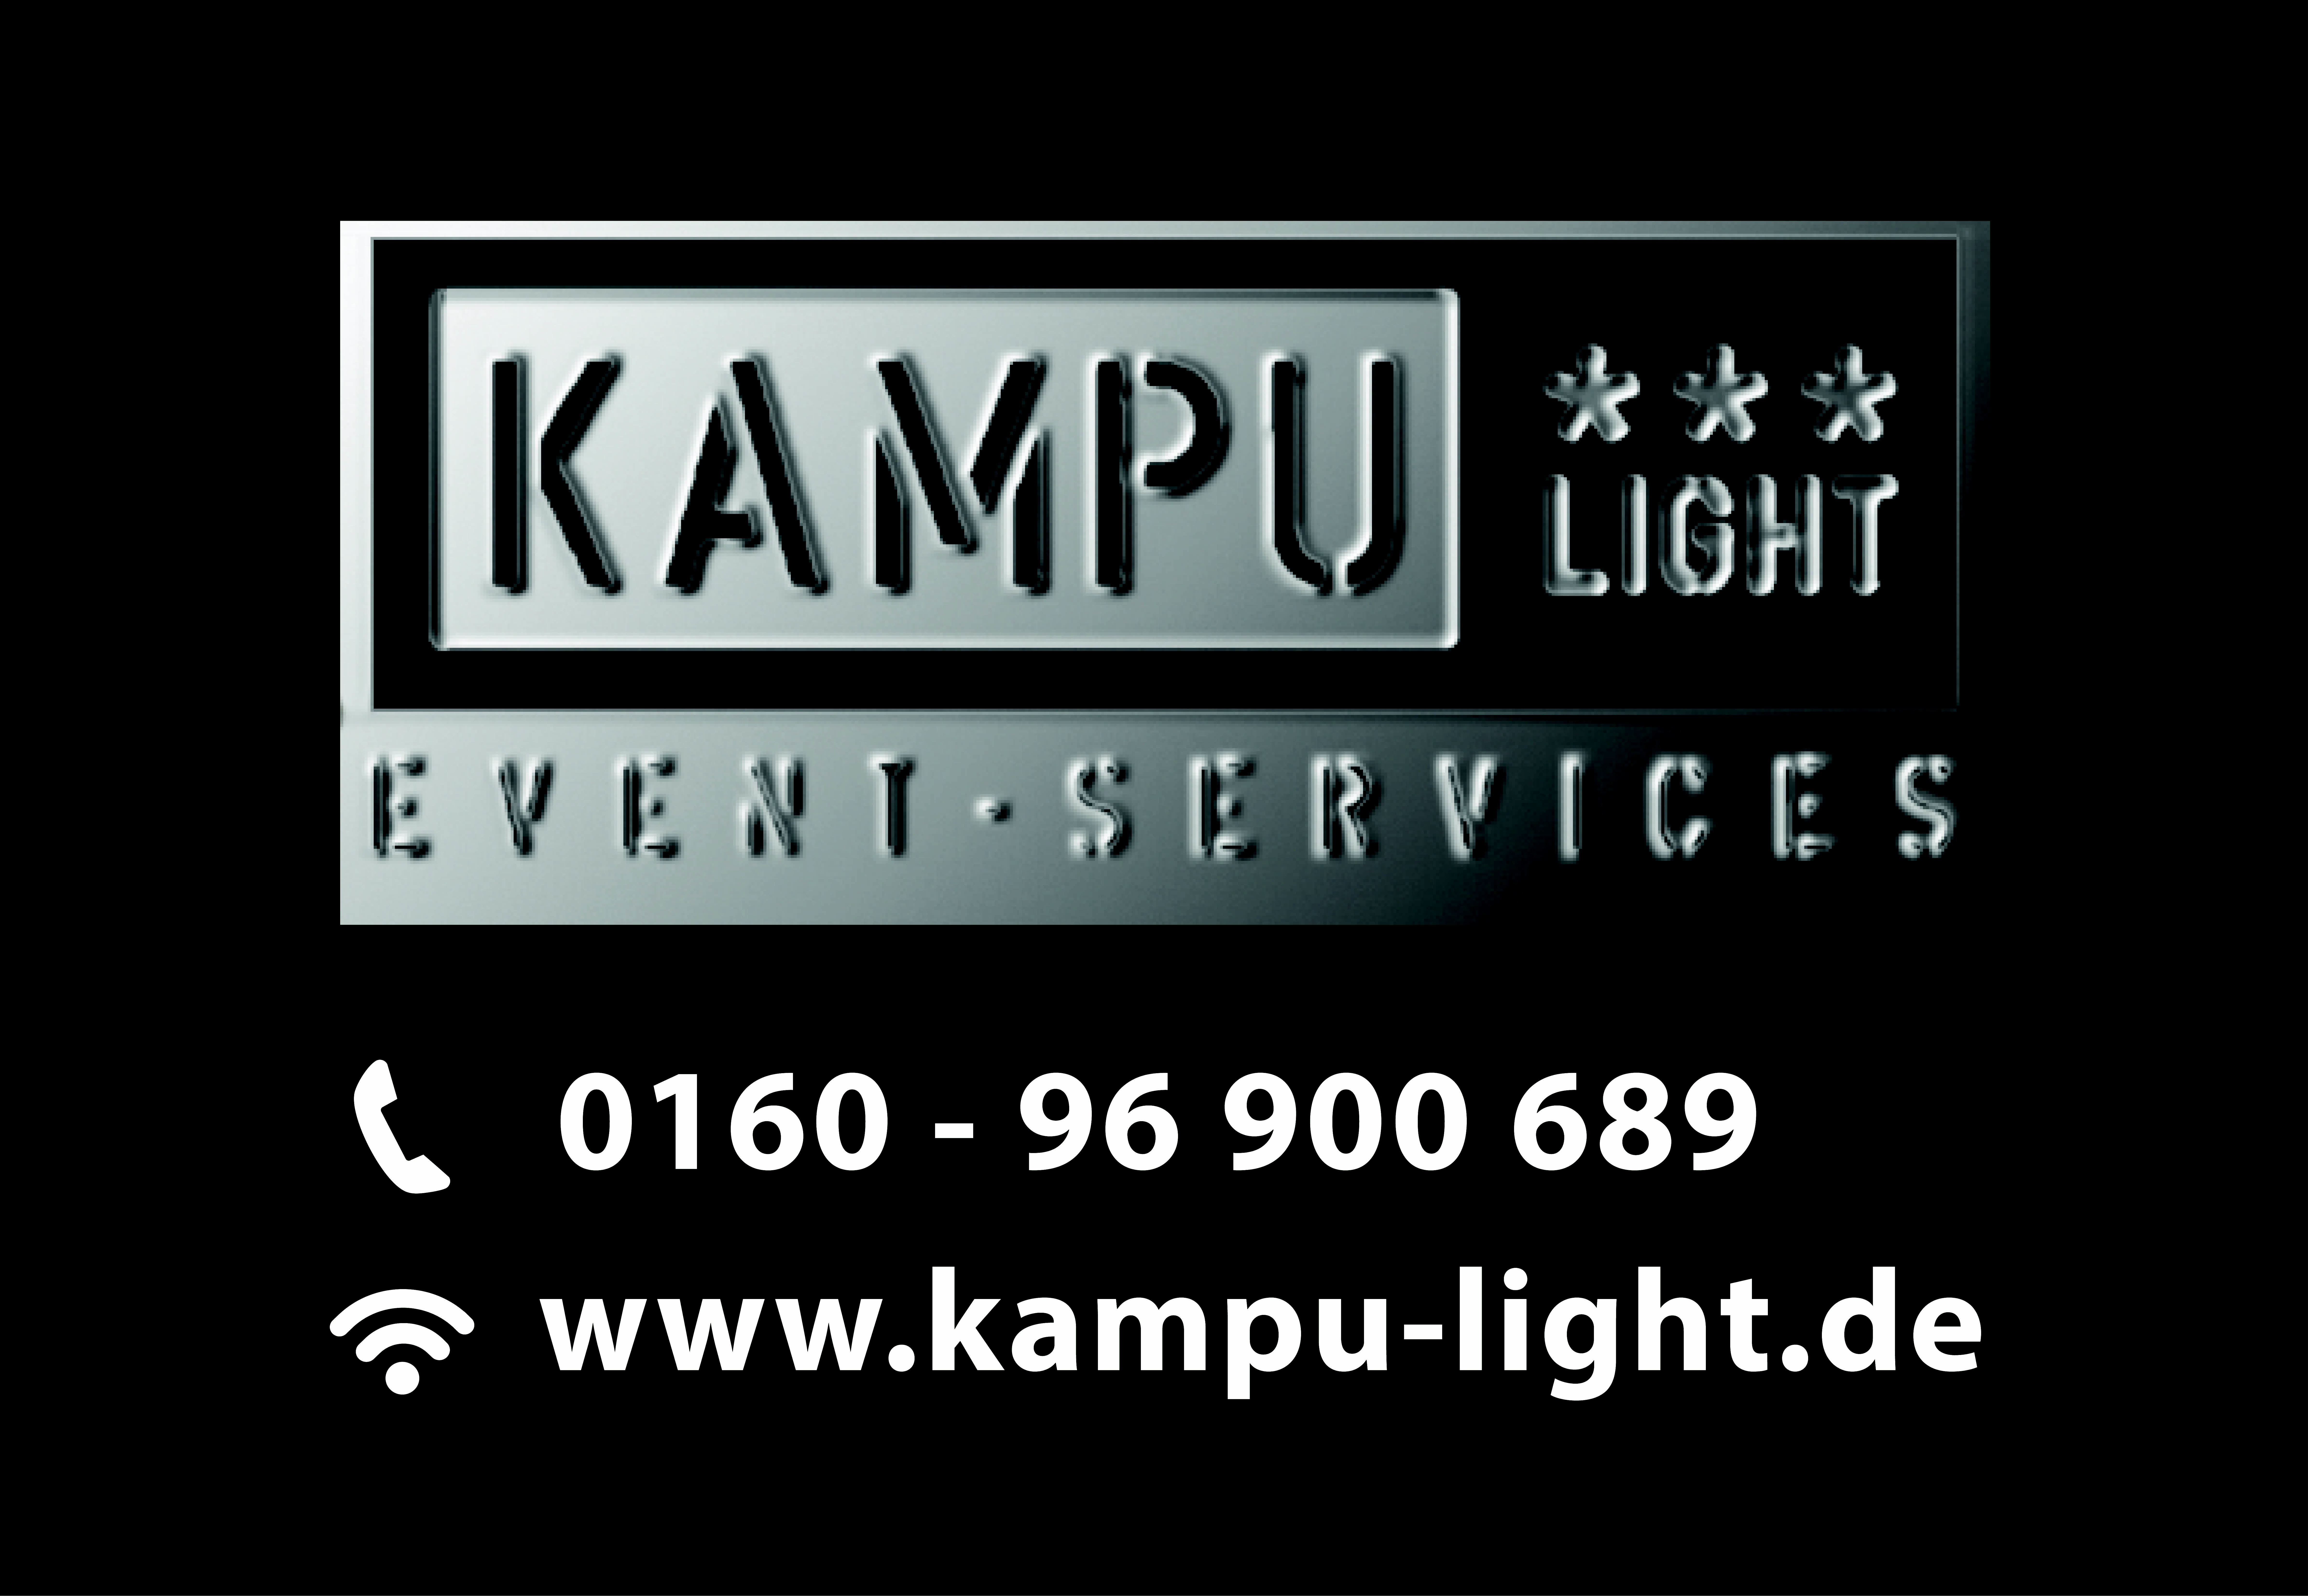 (c) Kampu-light.de